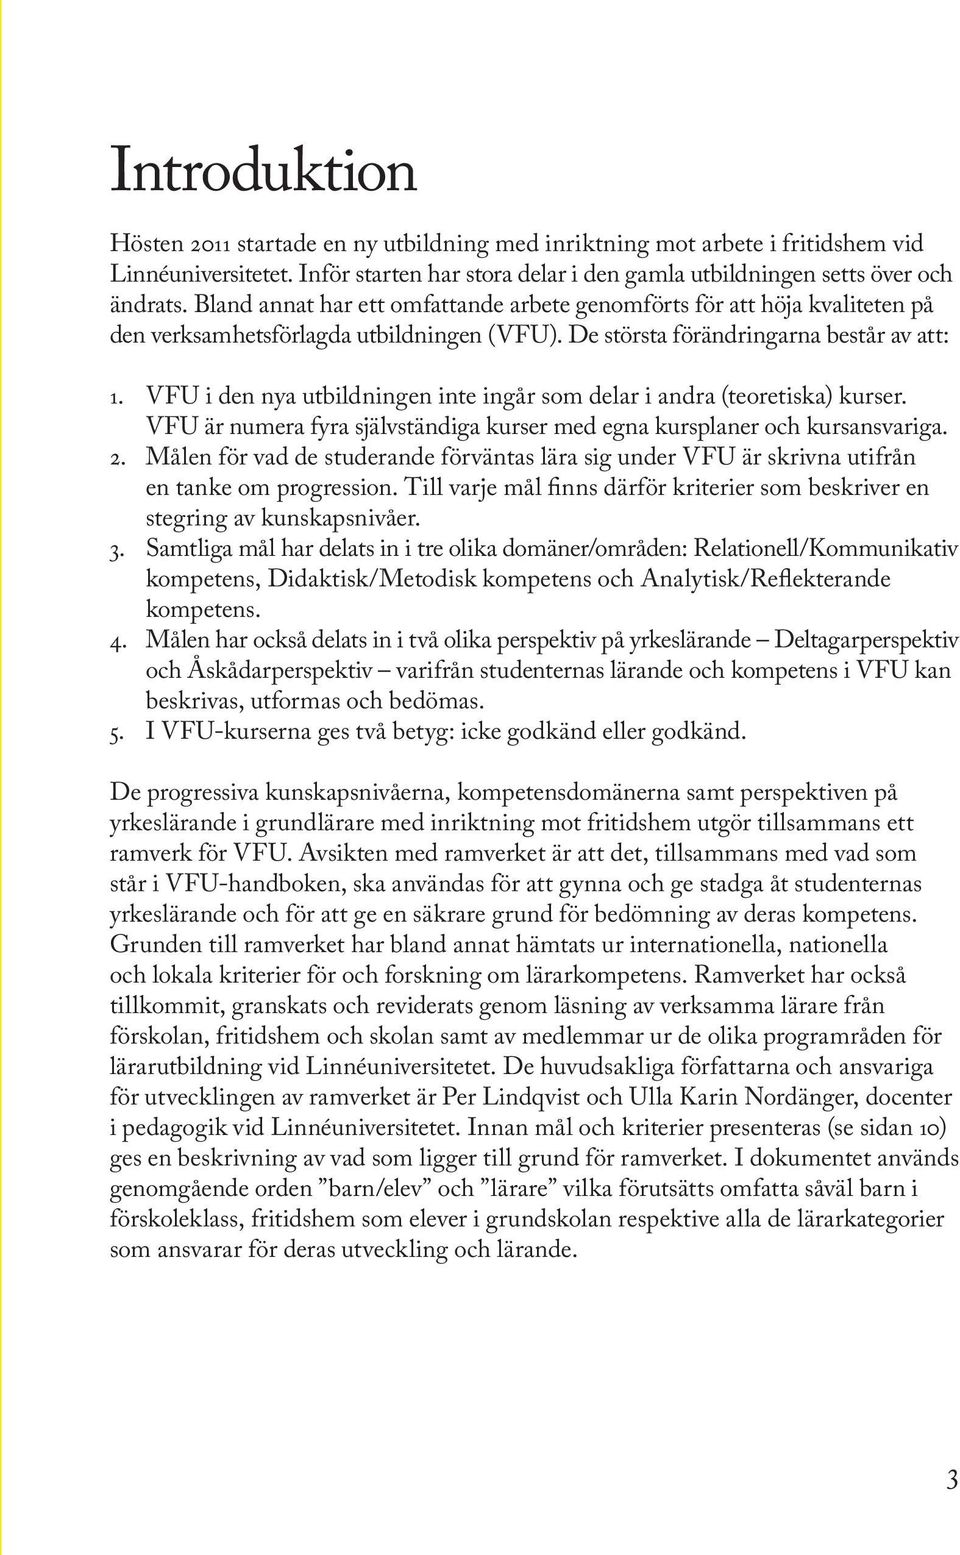 VFU i den nya utbildningen inte ingår som delar i andra (teoretiska) kurser. VFU är numera fyra självständiga kurser med egna kursplaner och kursansvariga. 2.